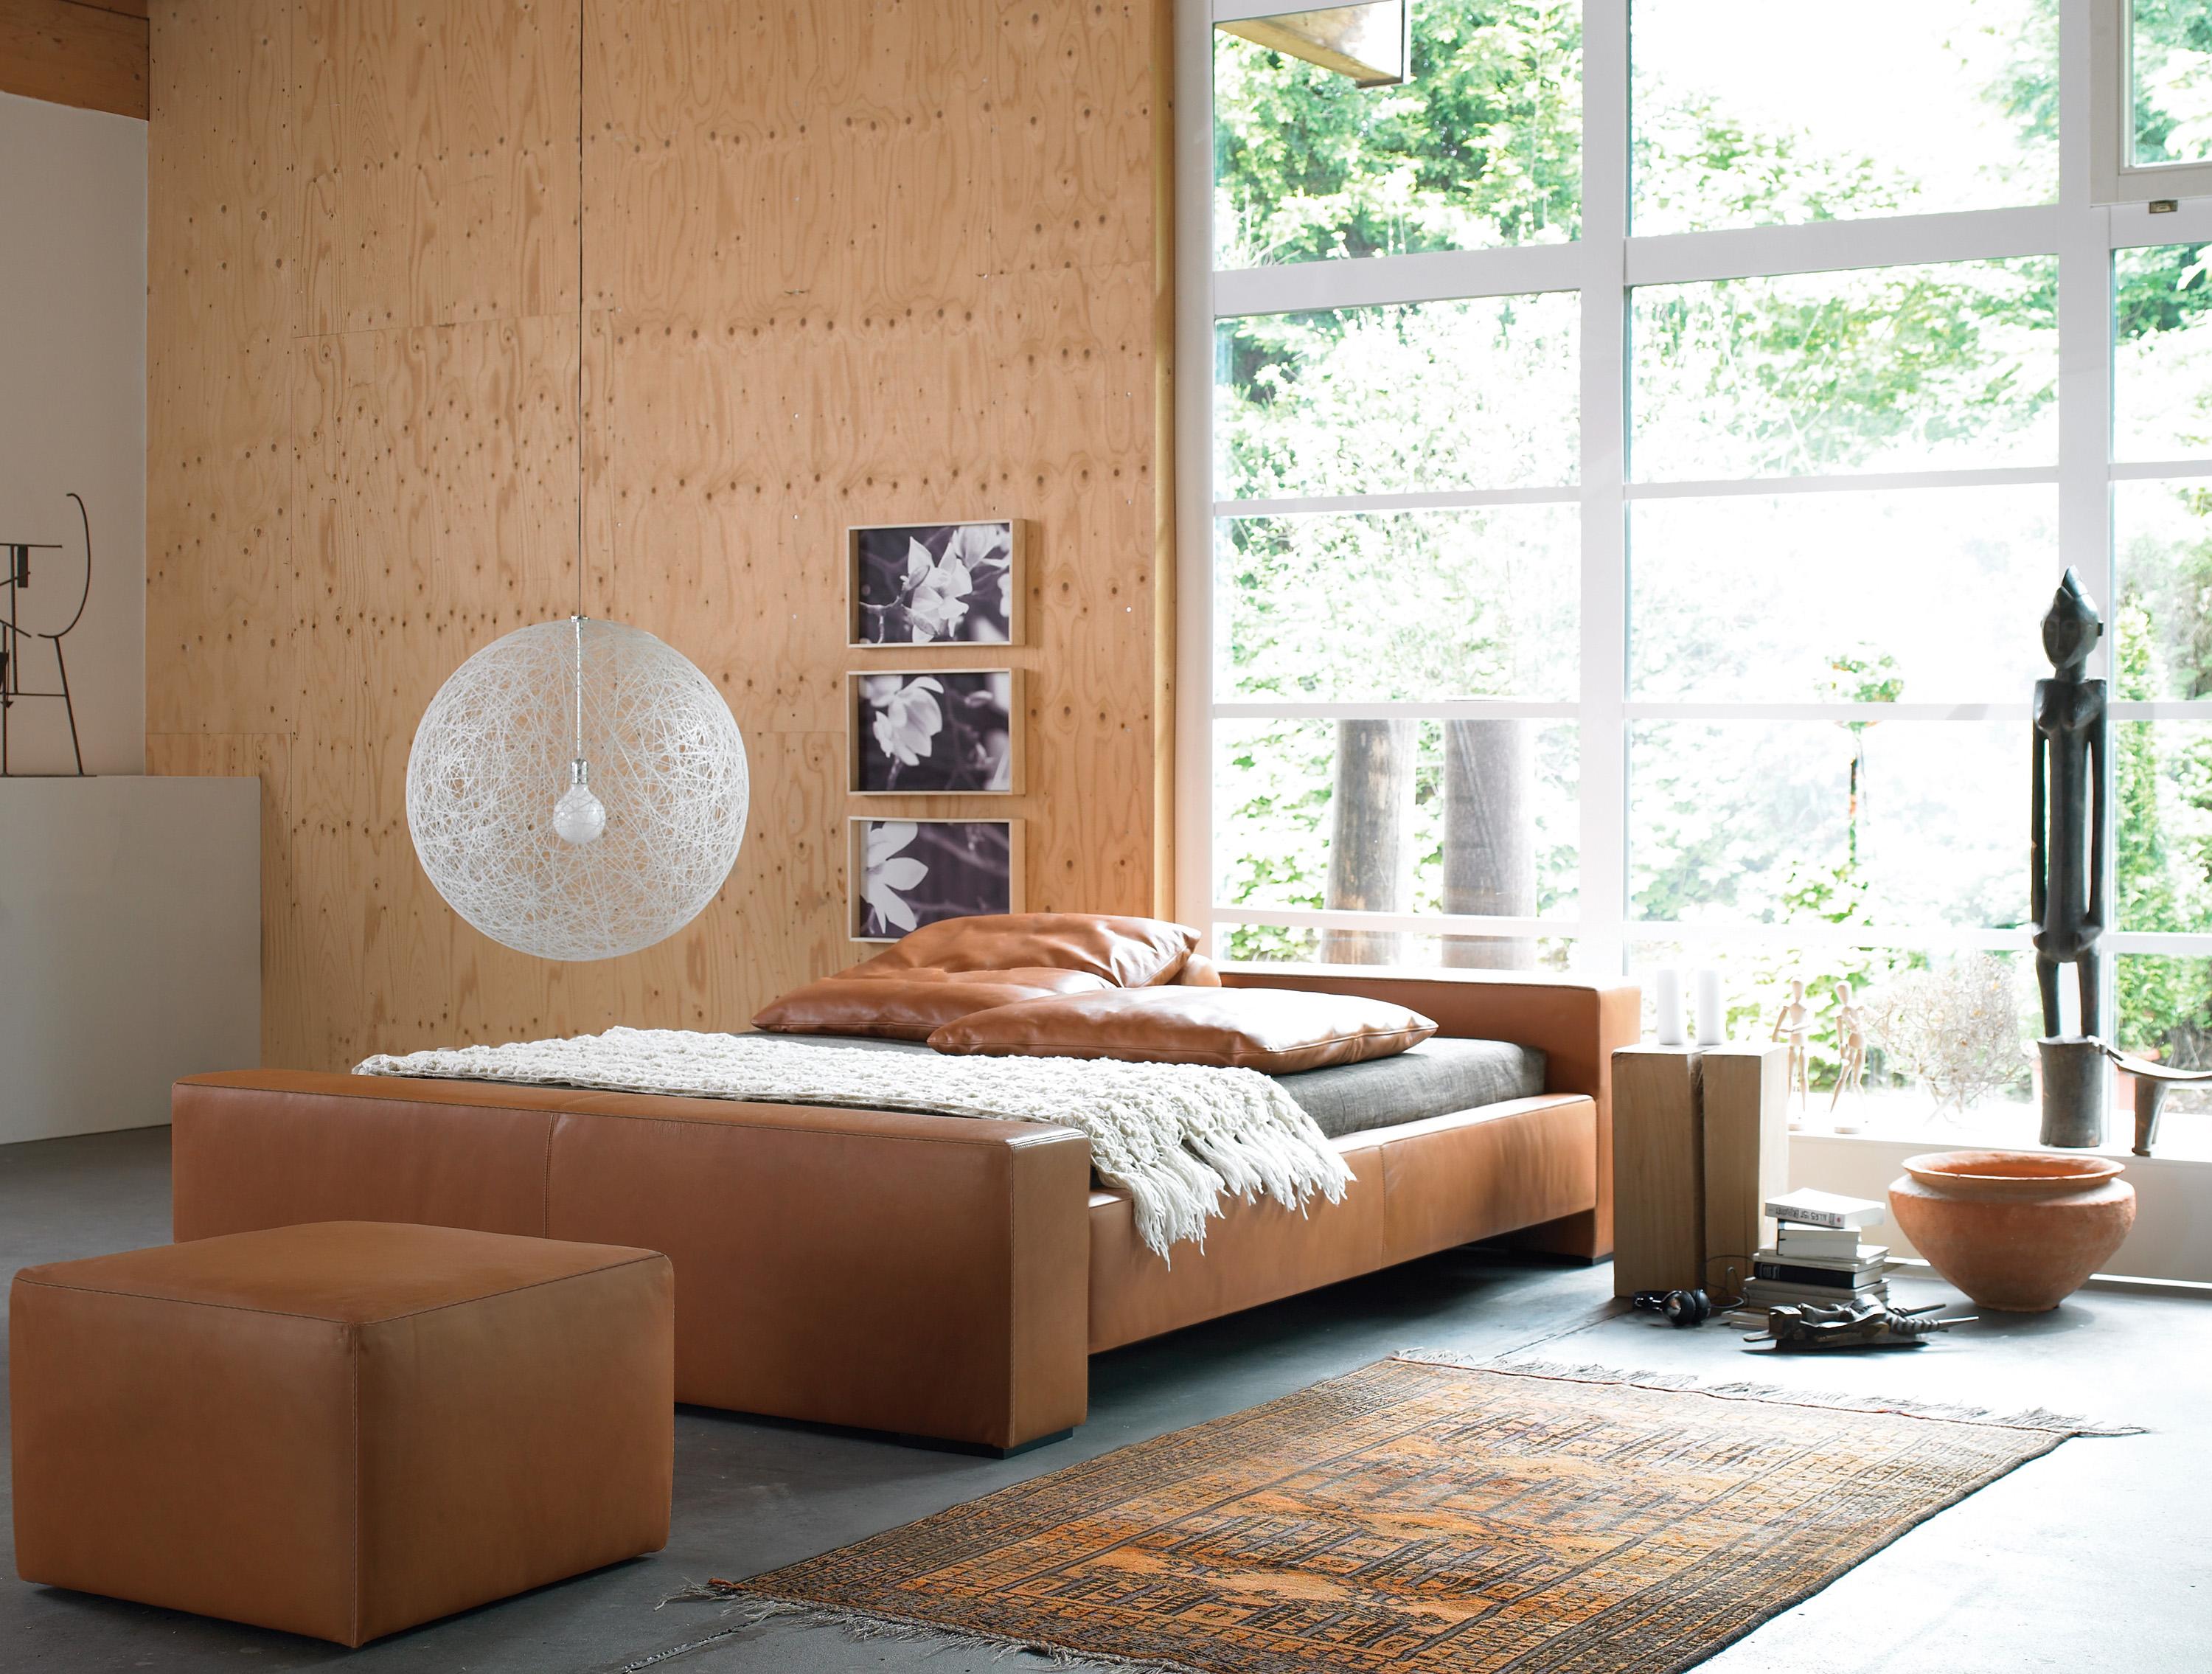 Schlafzimmergestaltung in natürlichen Holztönen #bett #teppich #wandverkleidung #hängeleuchte #wandbild #holzwandverkleidung #panoramafenster #zimmergestaltung ©Möller Design